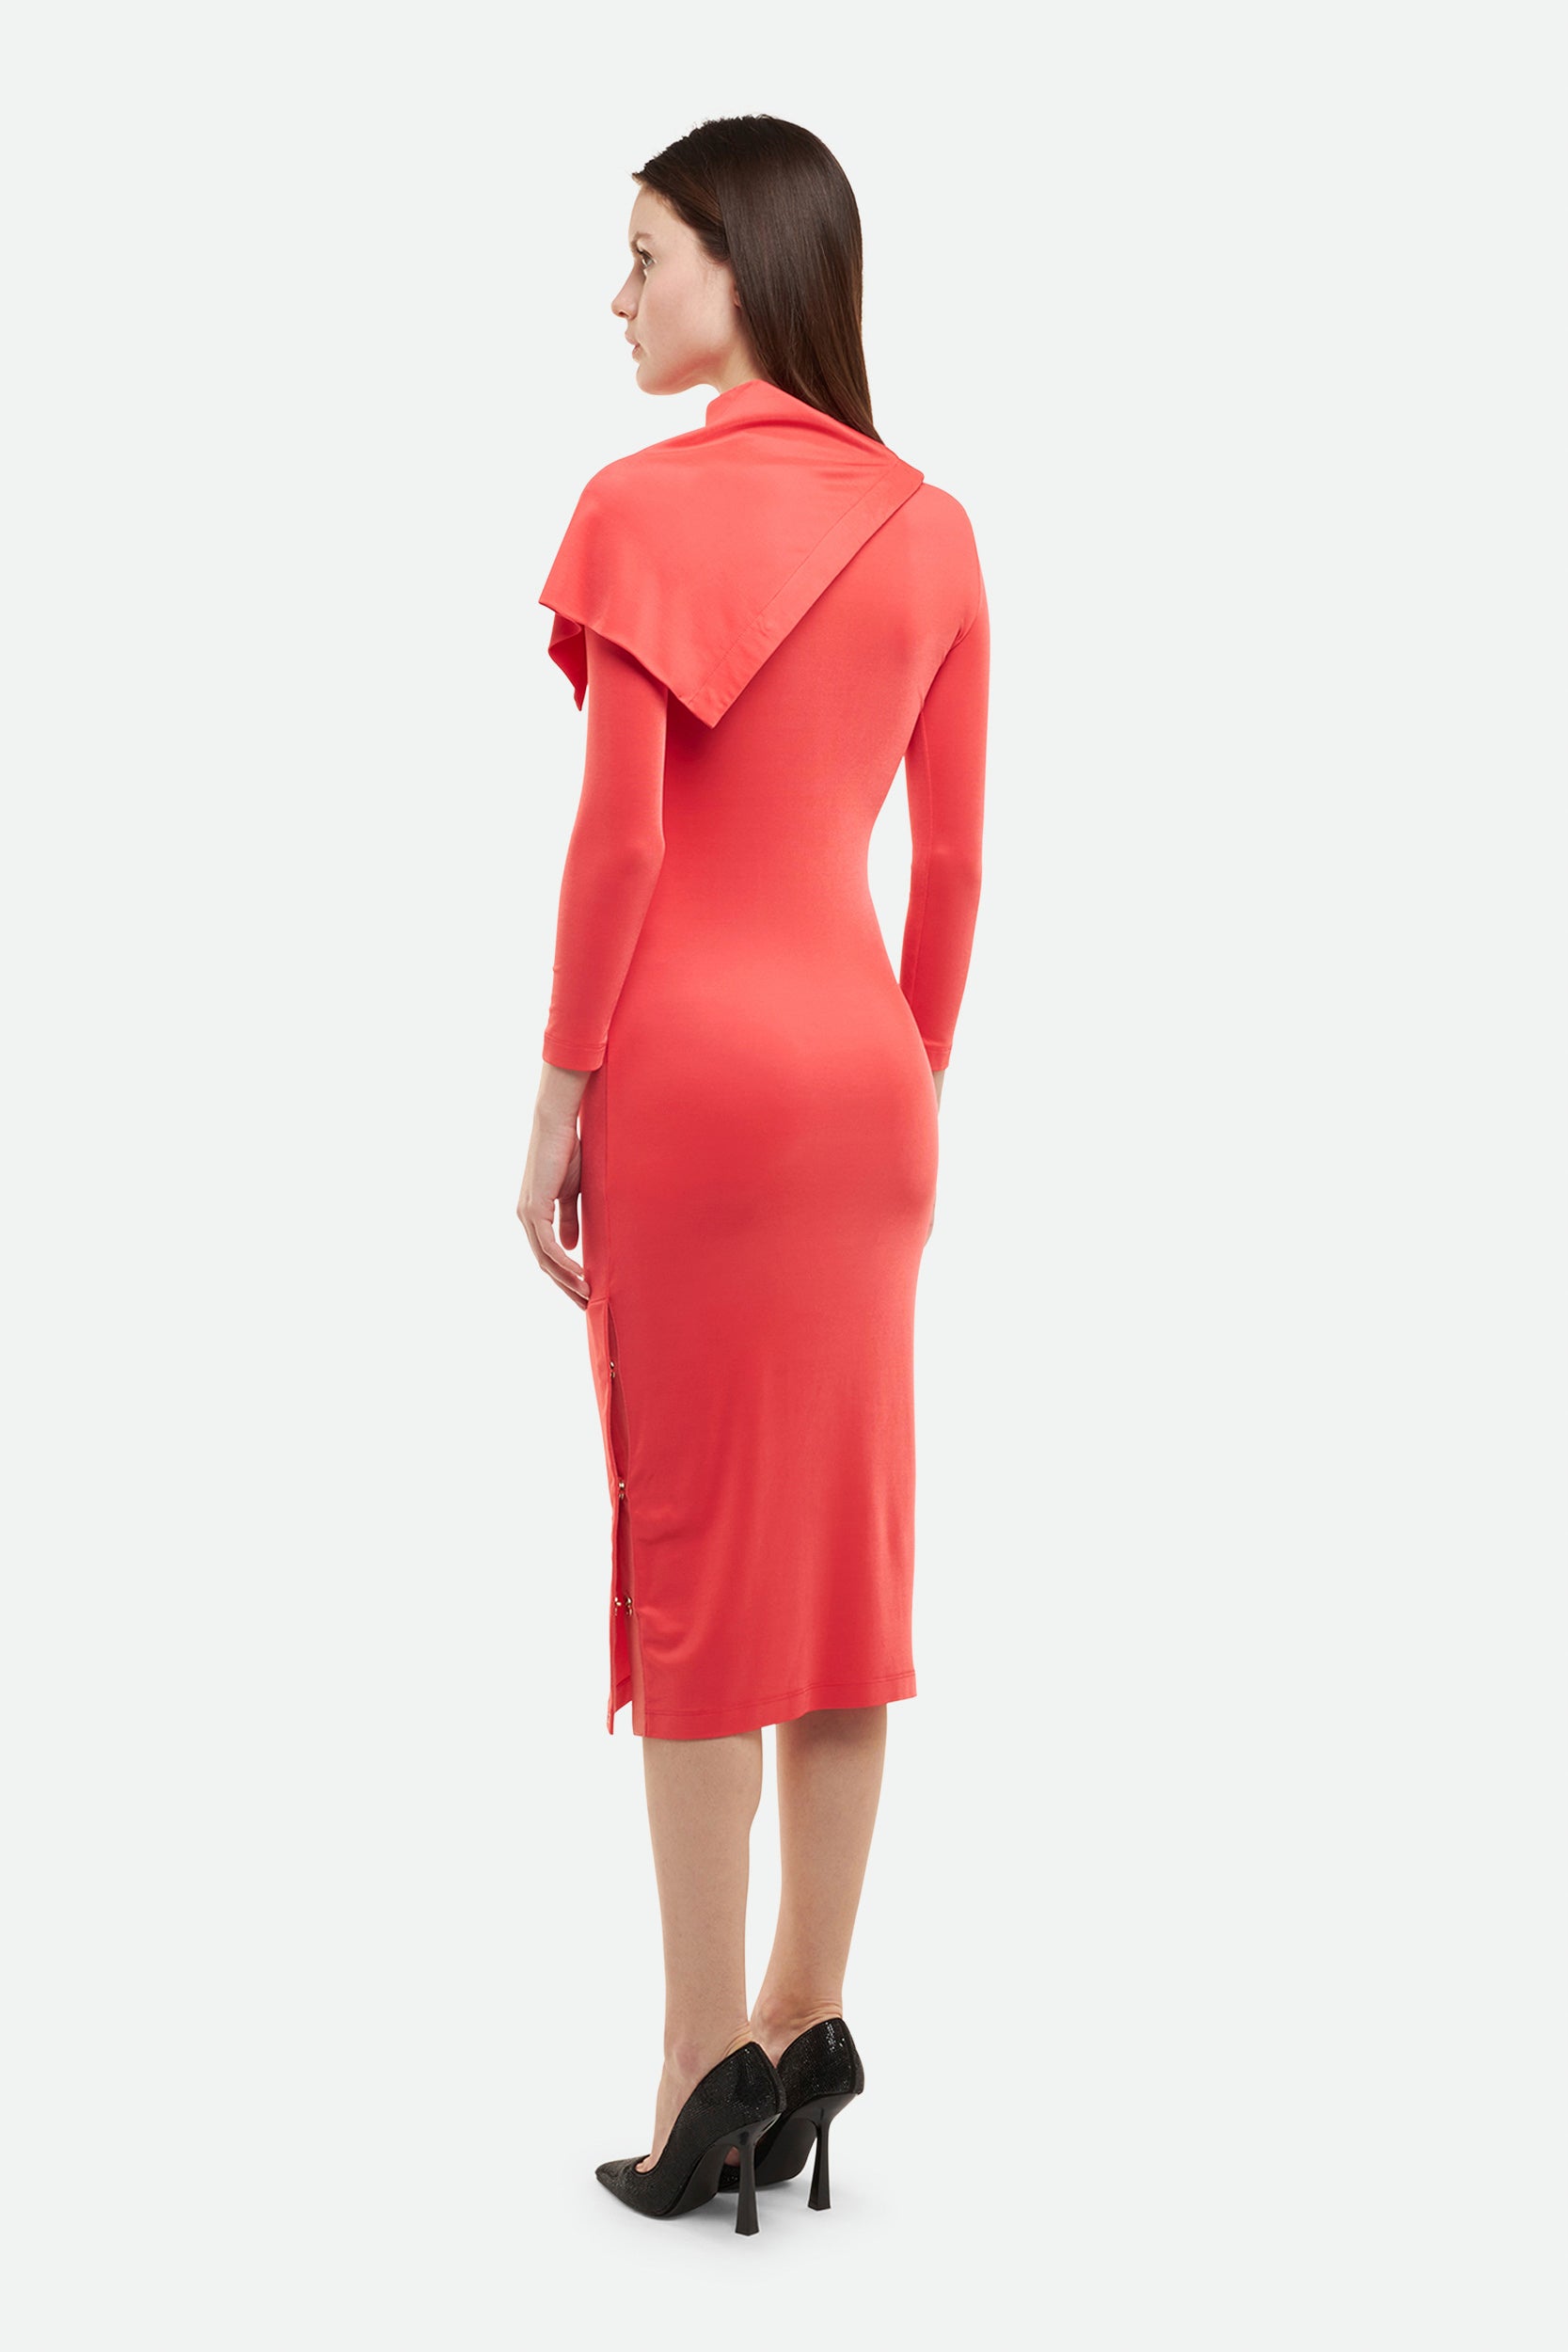 Rotes Kleid von Elisabetta Franchi